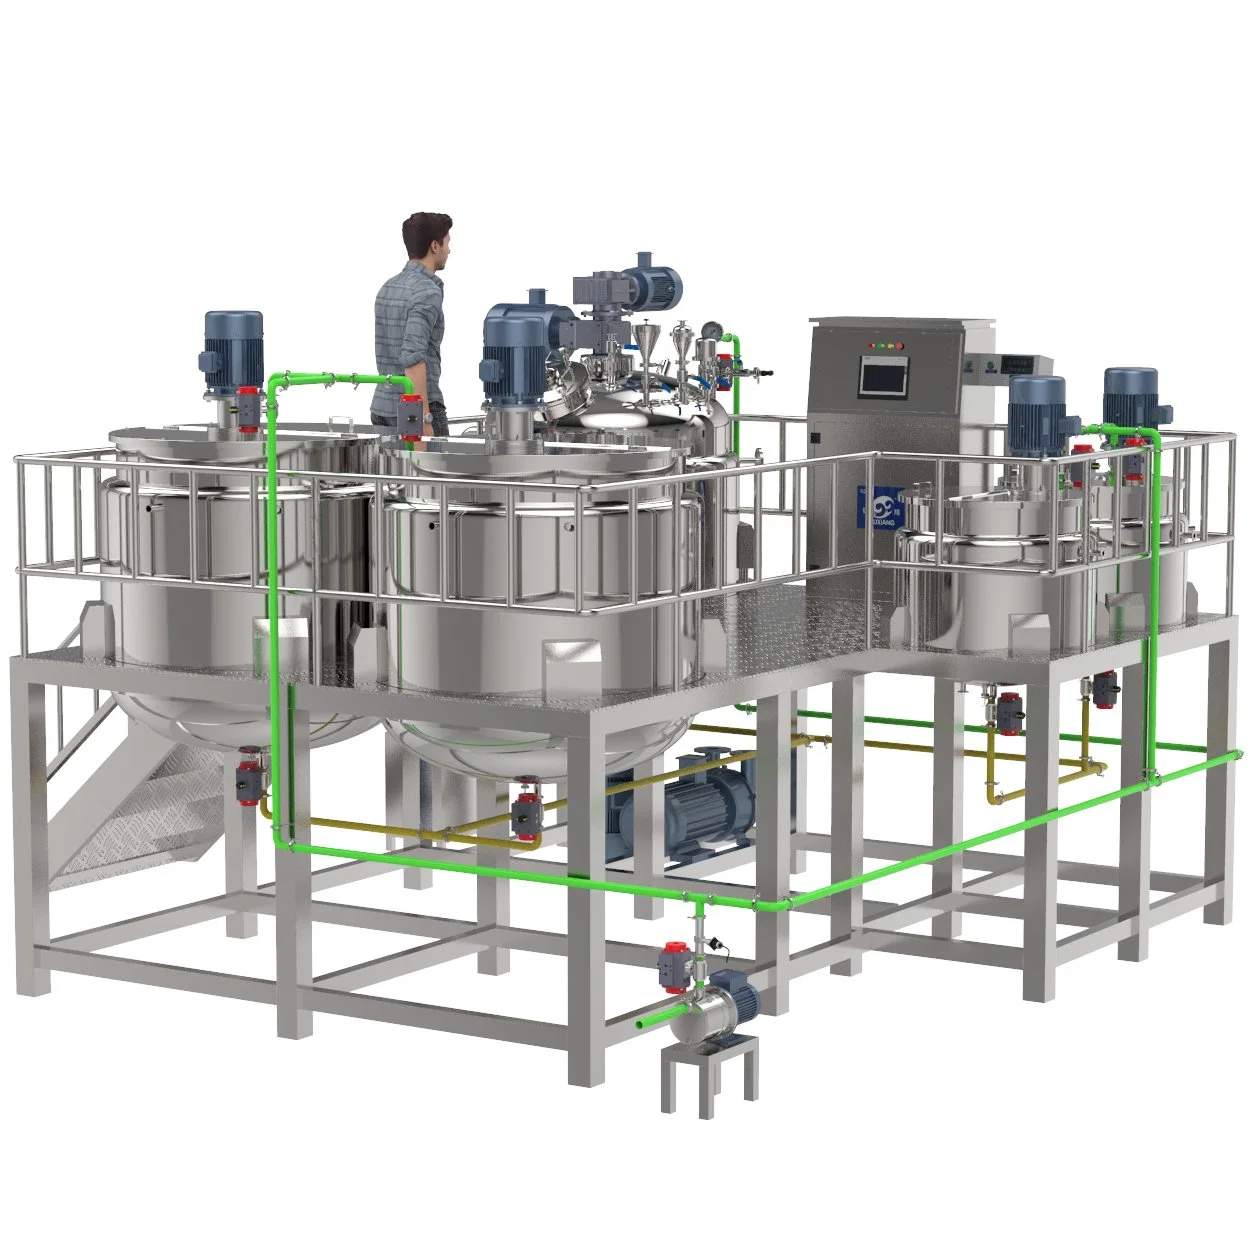 Top-Qualität Automatische Batching Control System Wasserkocher Mischwärme Erhaltung Rührmischbehälter für Reaktion